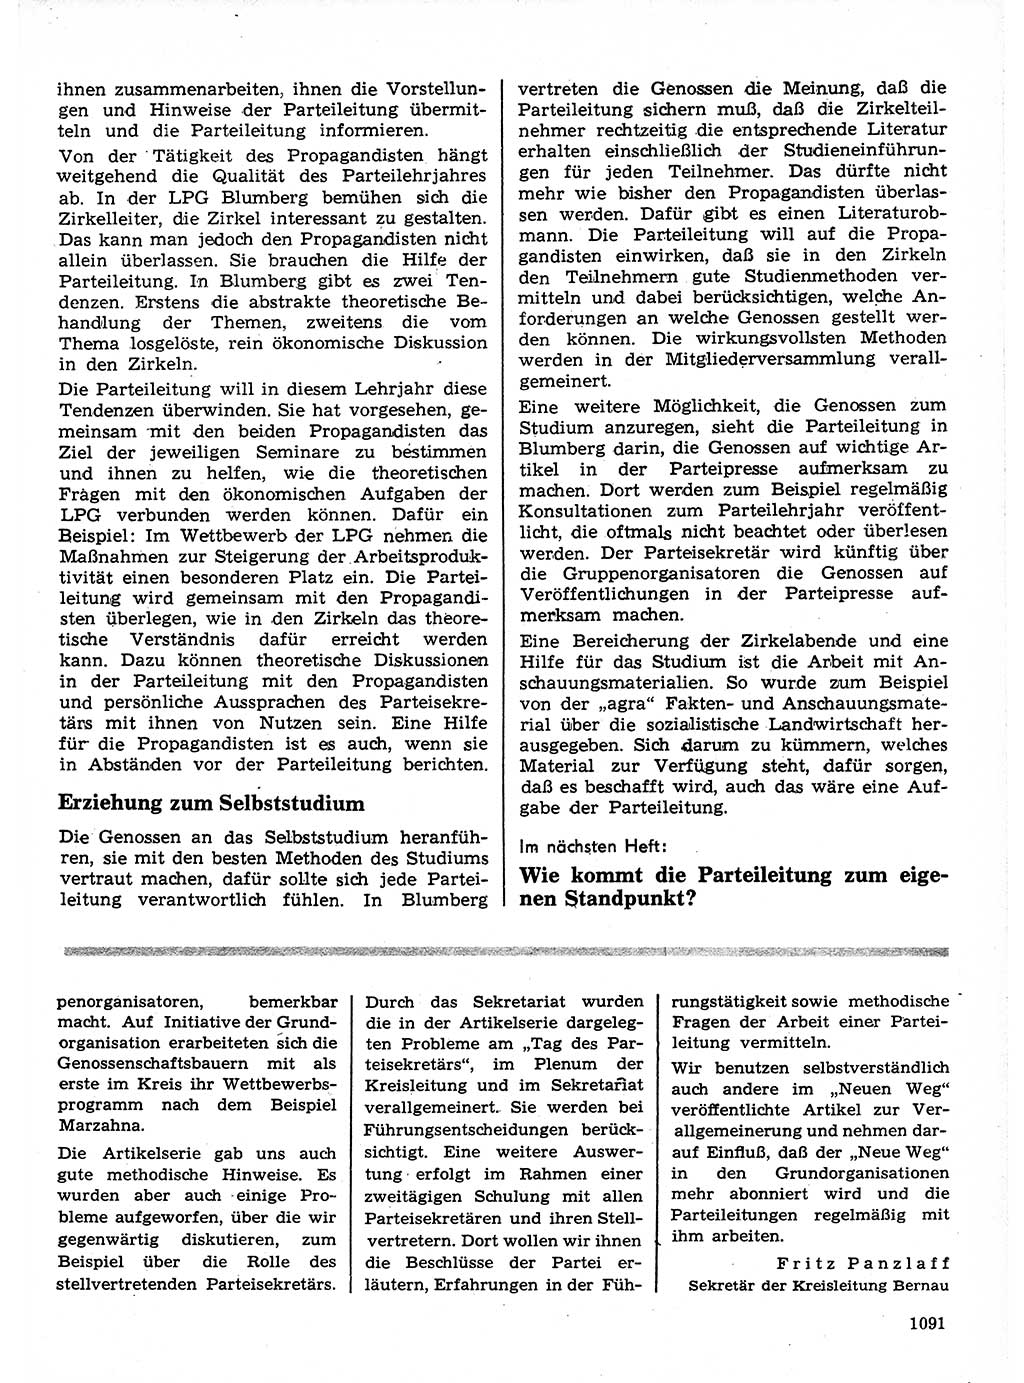 Neuer Weg (NW), Organ des Zentralkomitees (ZK) der SED (Sozialistische Einheitspartei Deutschlands) für Fragen des Parteilebens, 24. Jahrgang [Deutsche Demokratische Republik (DDR)] 1969, Seite 1091 (NW ZK SED DDR 1969, S. 1091)